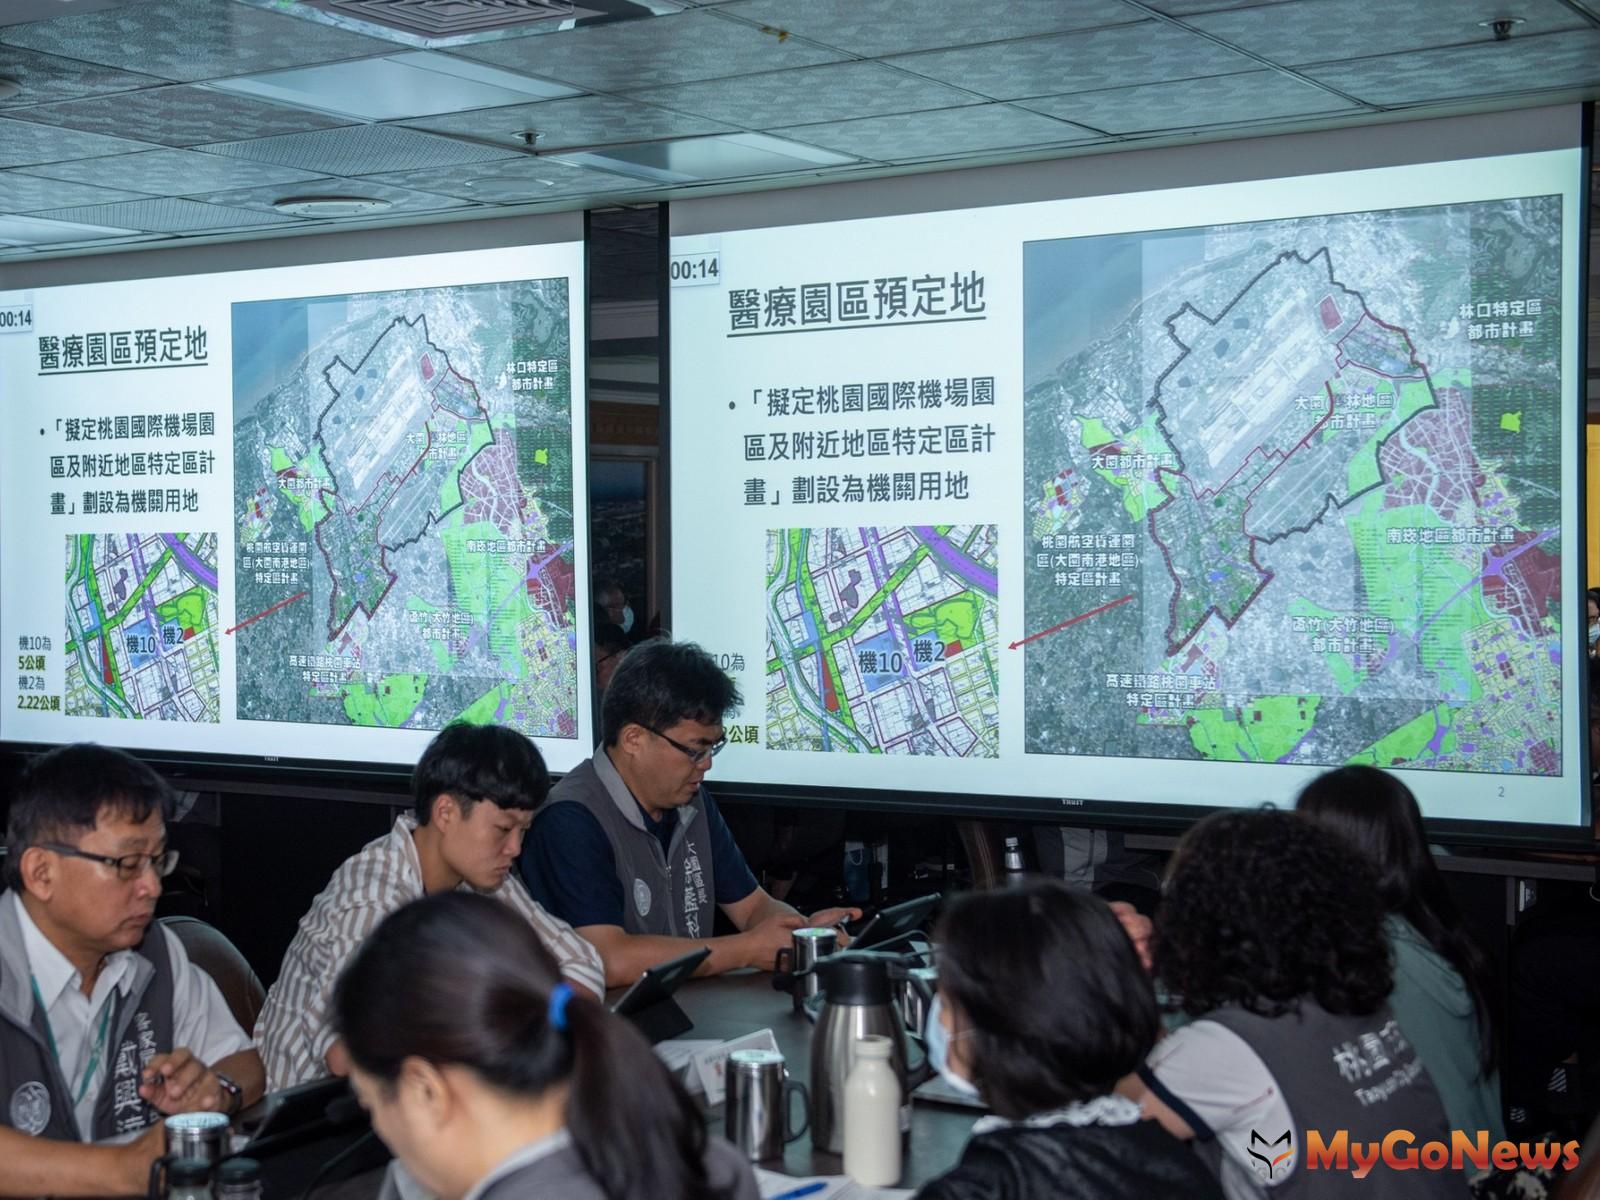 清大醫療園區預定用地都計變更2021年7月交付清大規劃